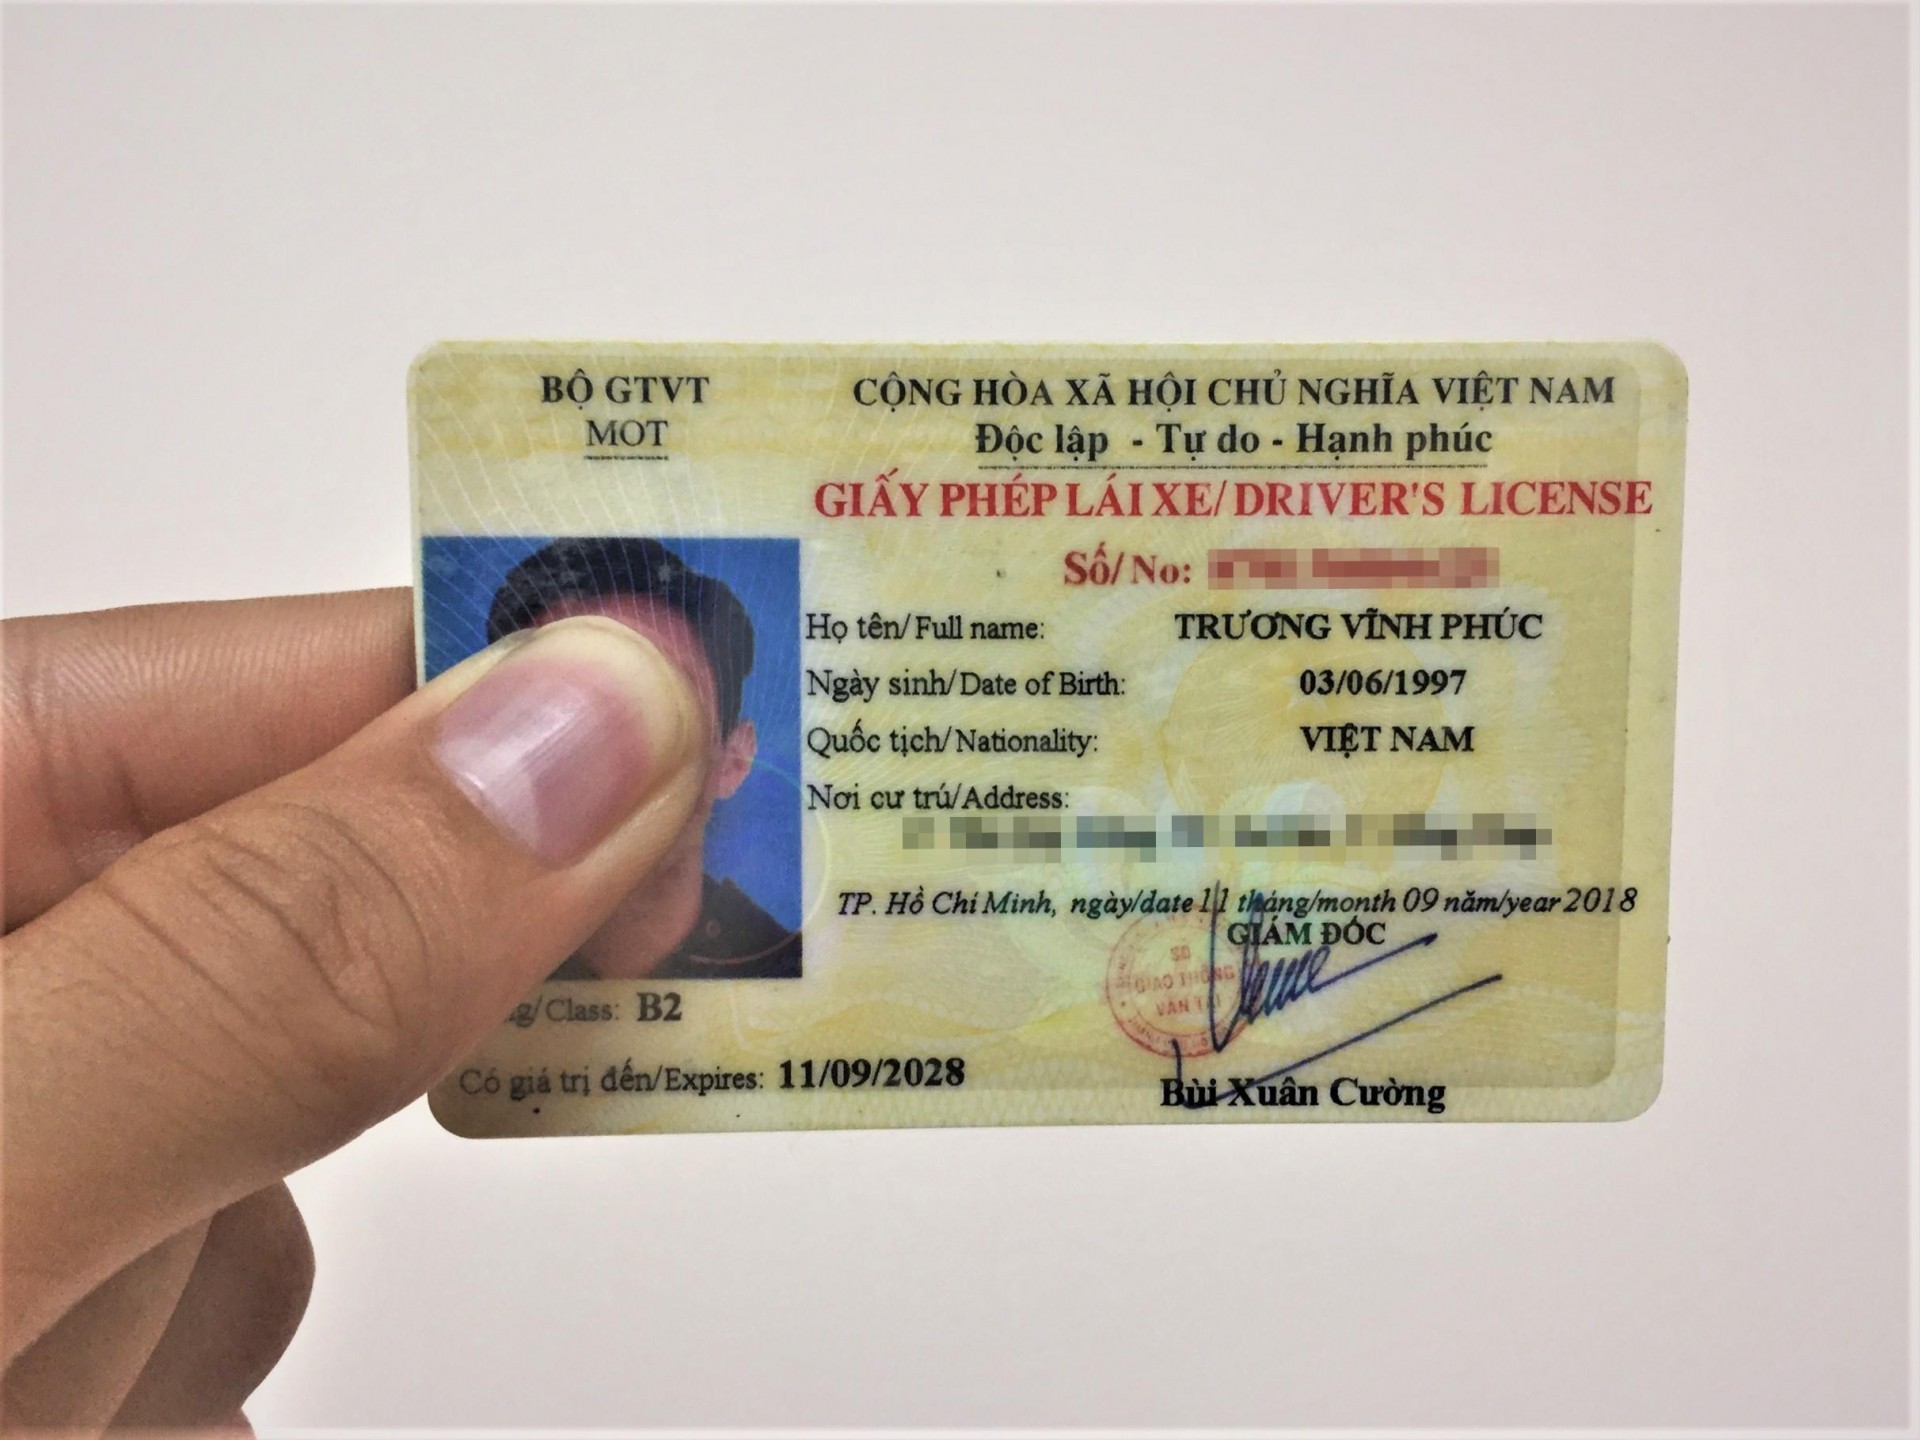 Bỏ giấy phép lái xe hạng B2, có phải đi làm lại không?